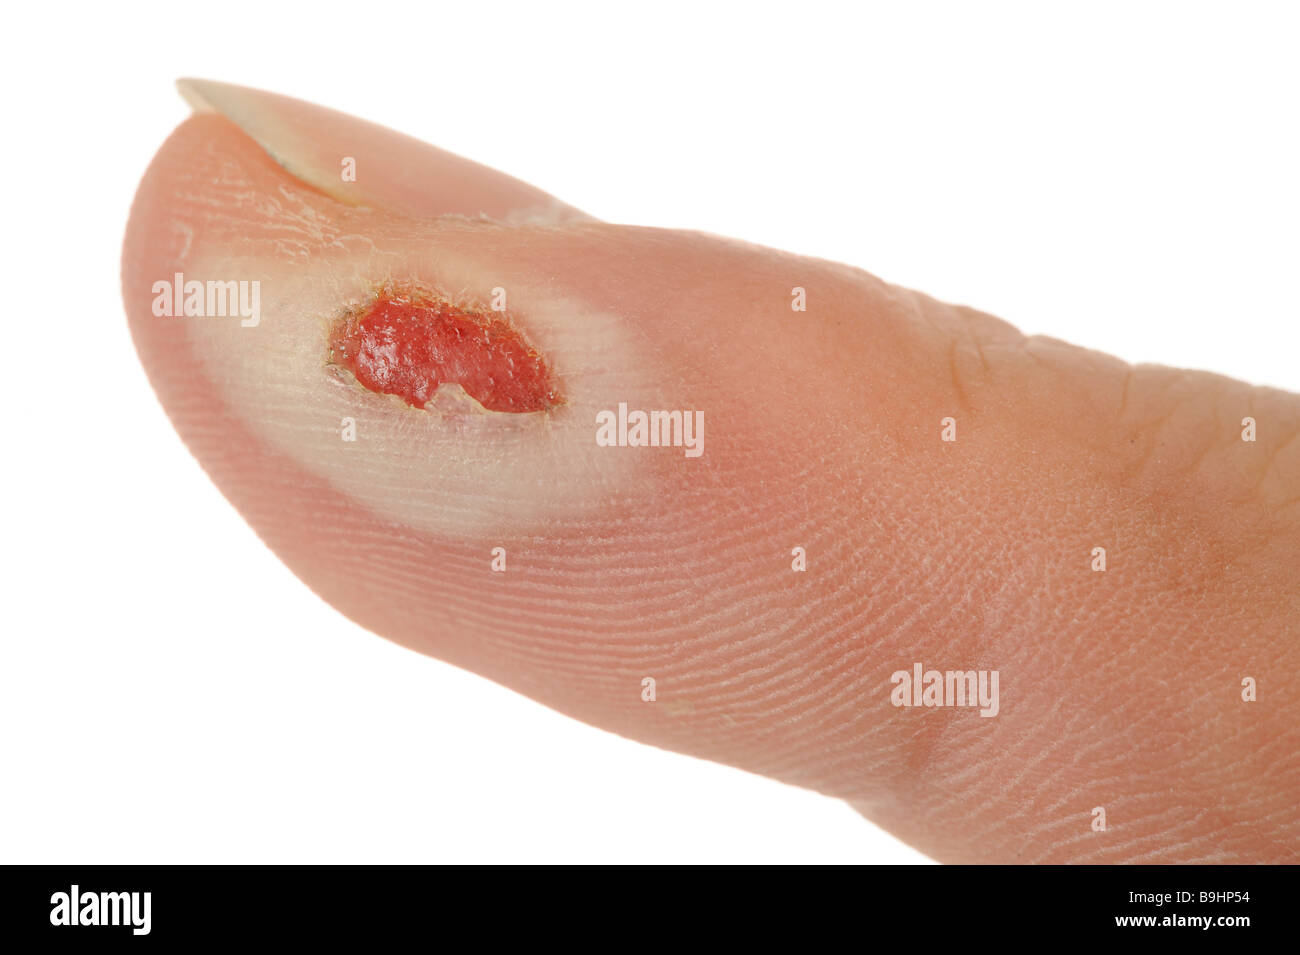 Di secondo grado dito bruciato con un trafitto burn blister sull'epidermide e distrutto lo strato papillare (stratum papillare) Foto Stock